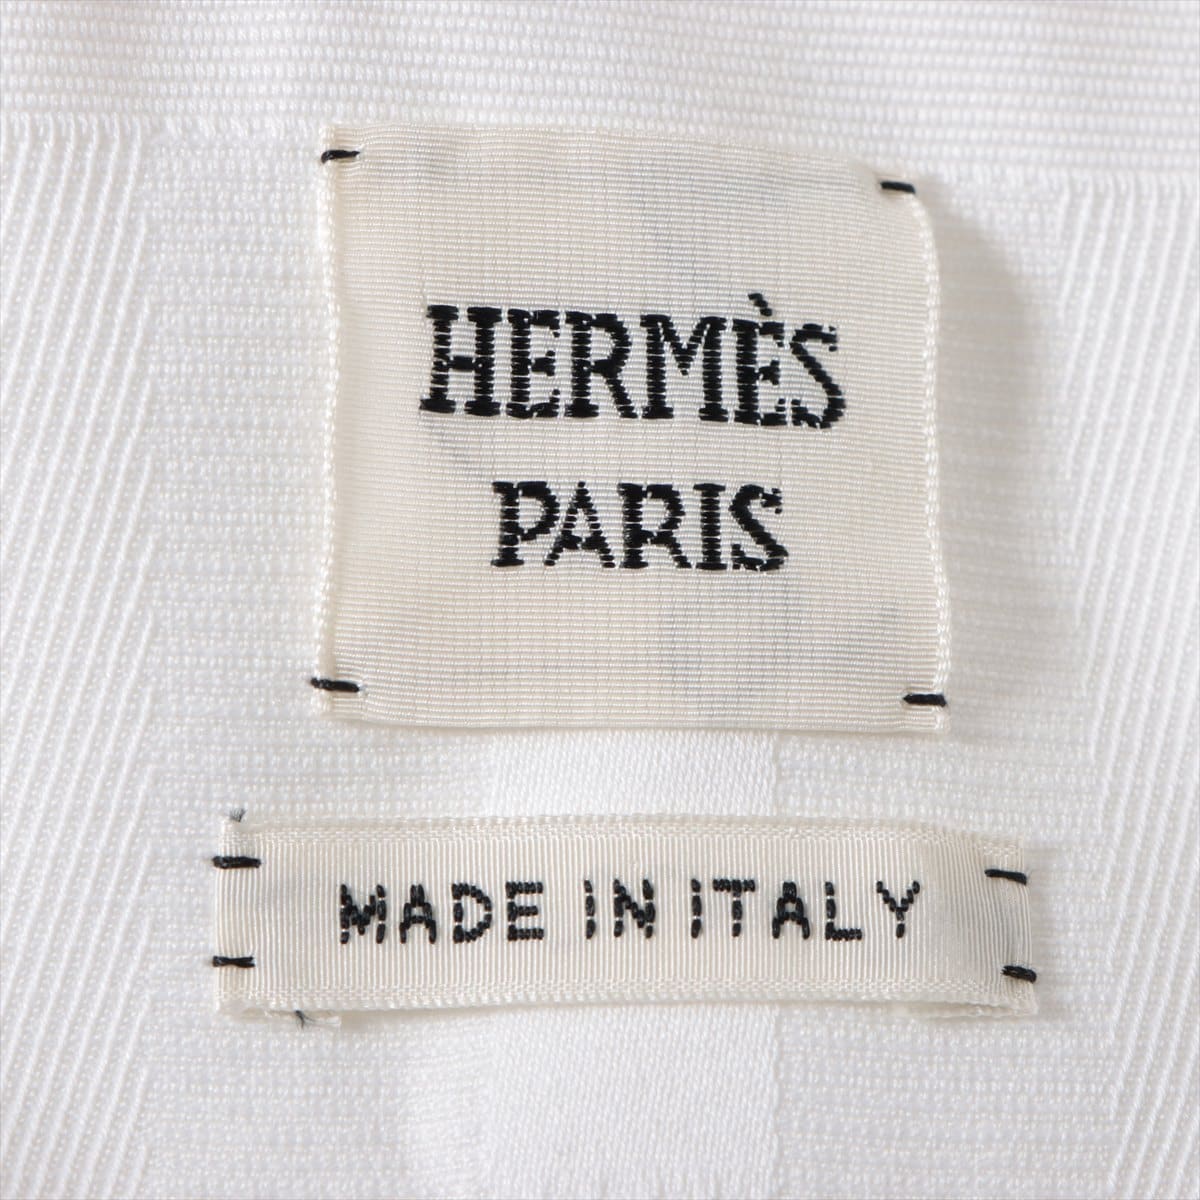 Hermès Cotton Setup 36/34 Ladies' White